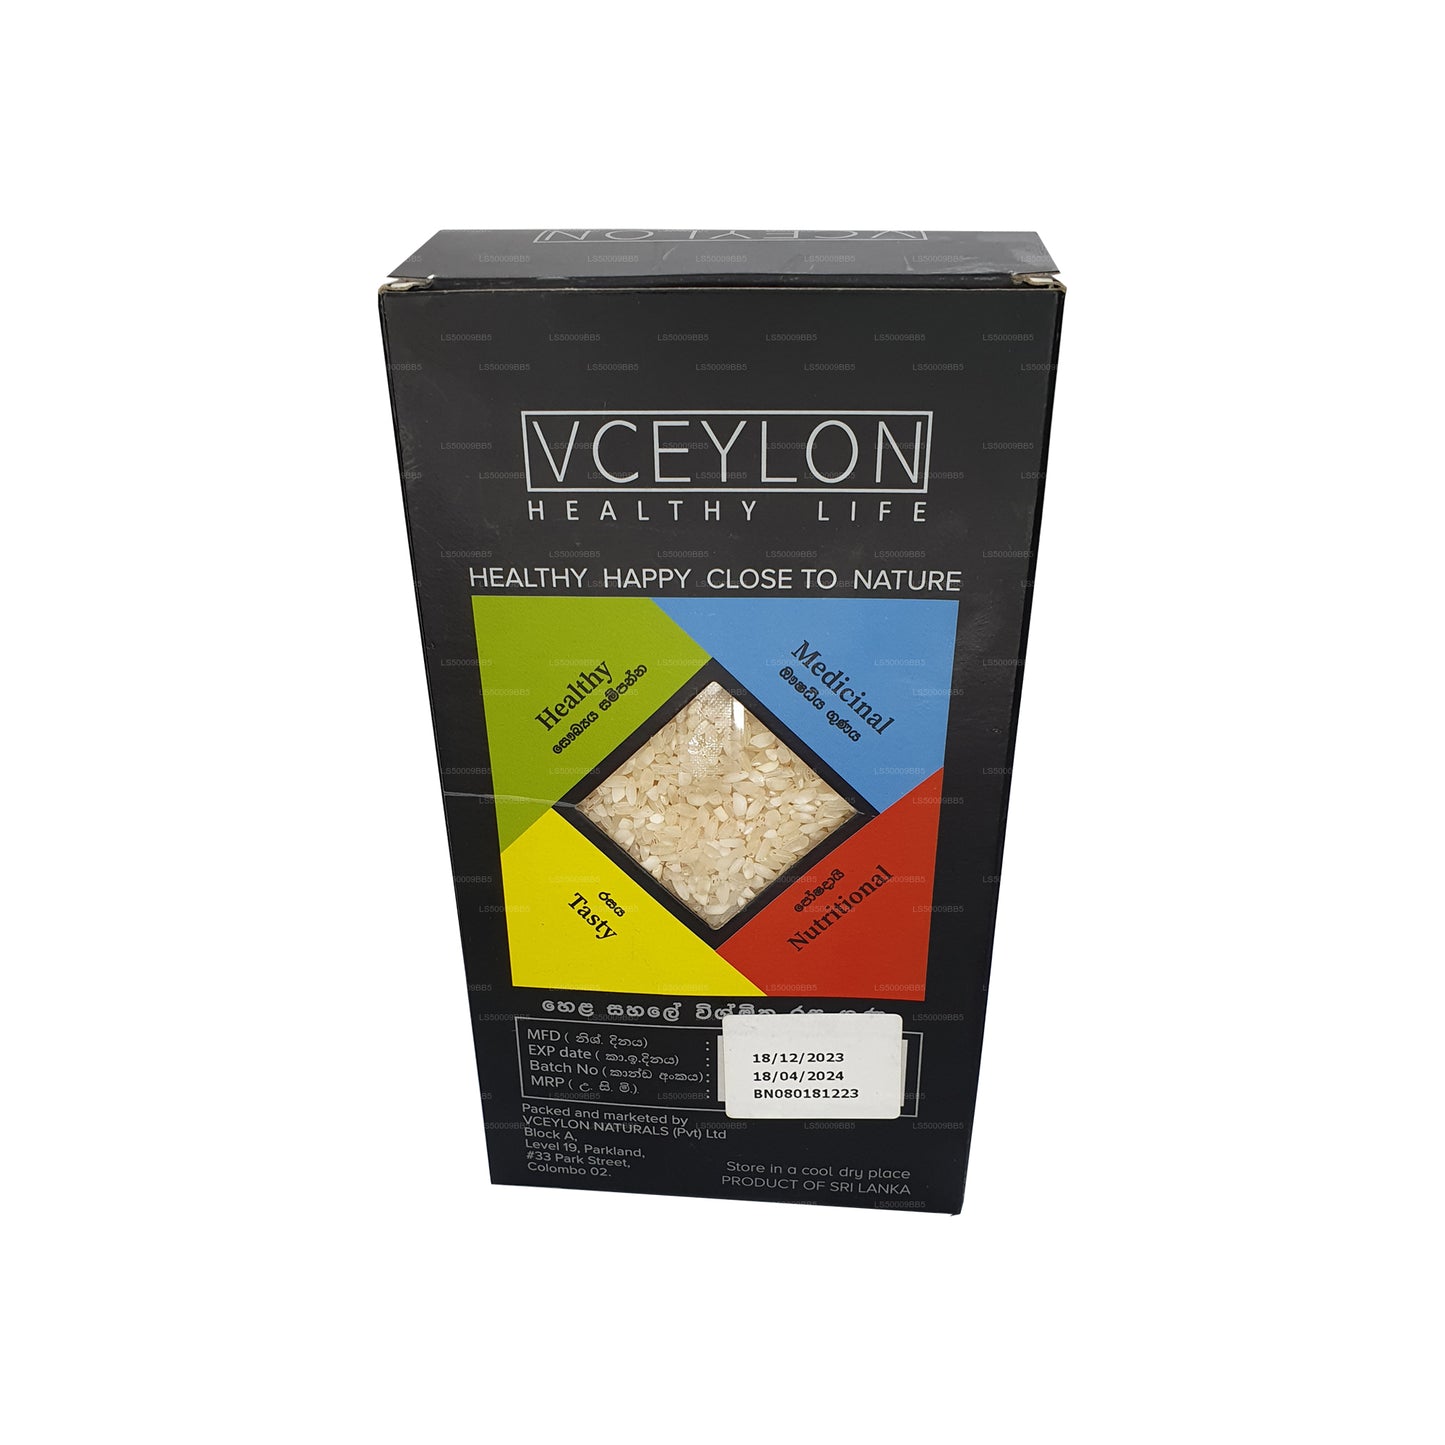 Ceylon White Mix Reis (750 g)